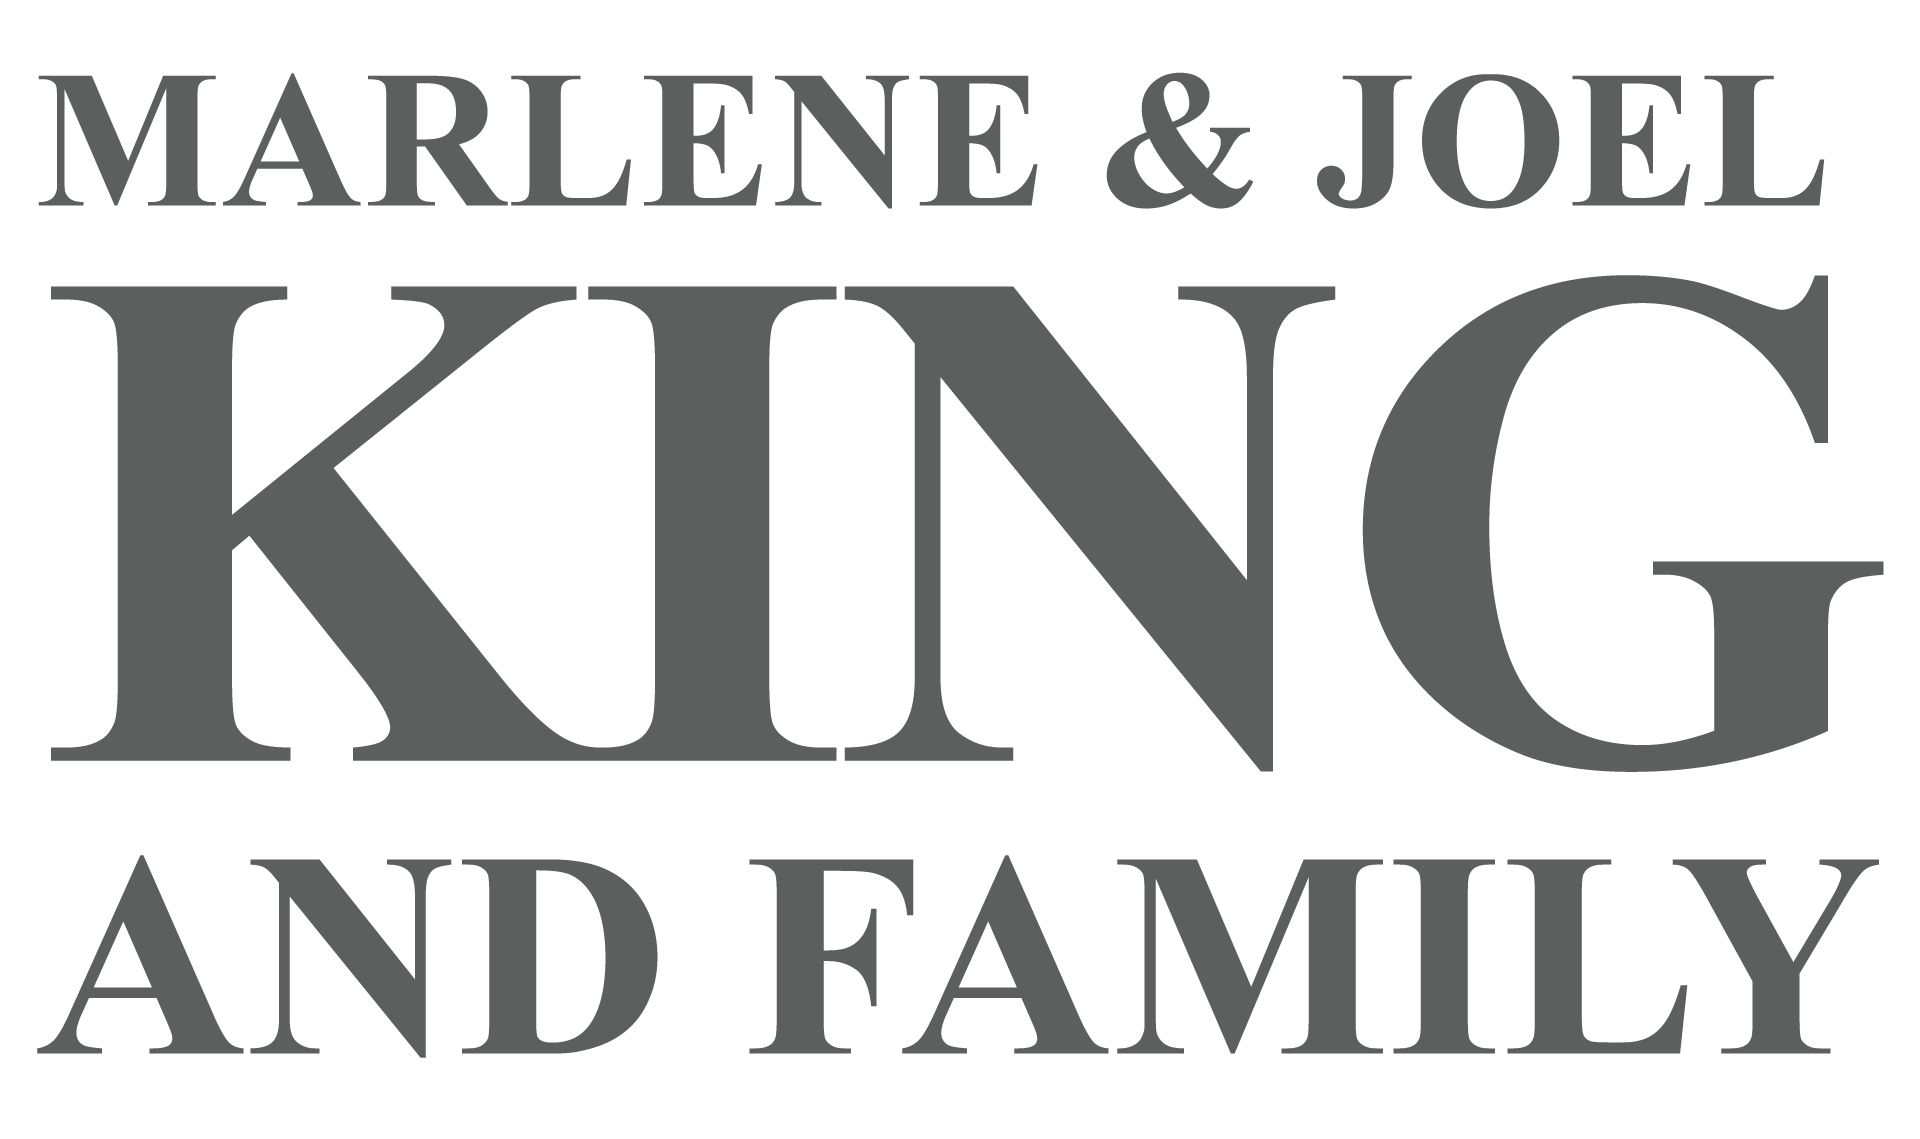 MARLENE & JOEL KING AND FAMILY